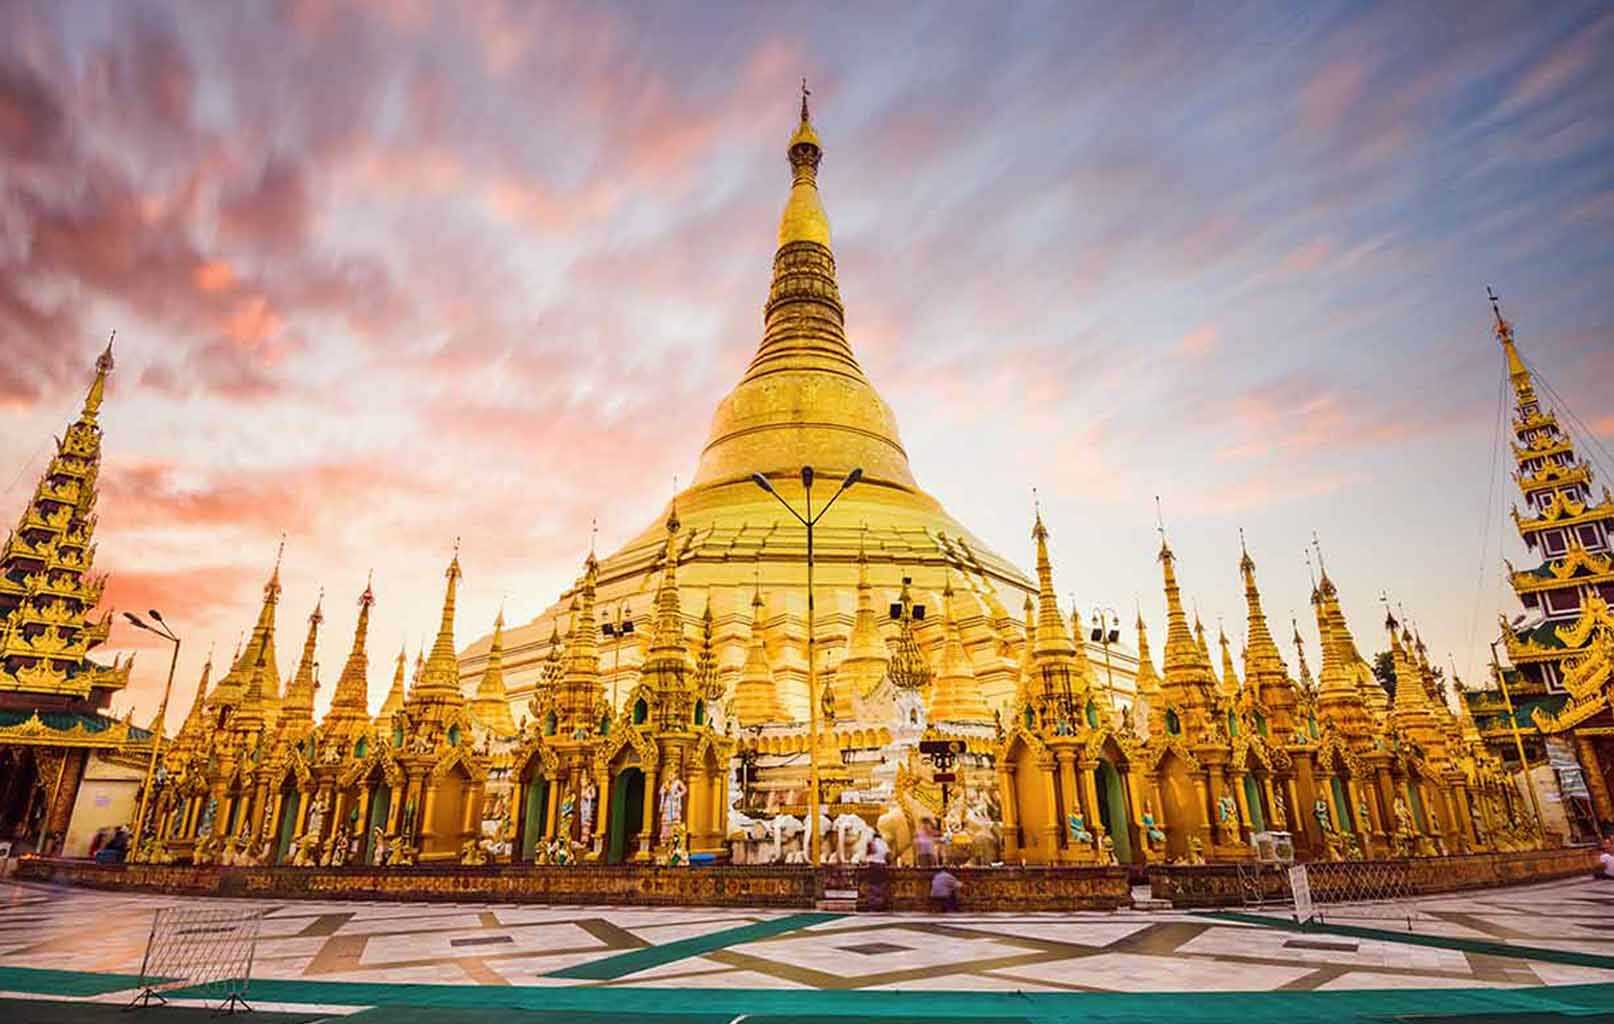 Du lịch Myanmar 4 ngày tết nguyên đán Đinh Dậu từ Sài Gòn